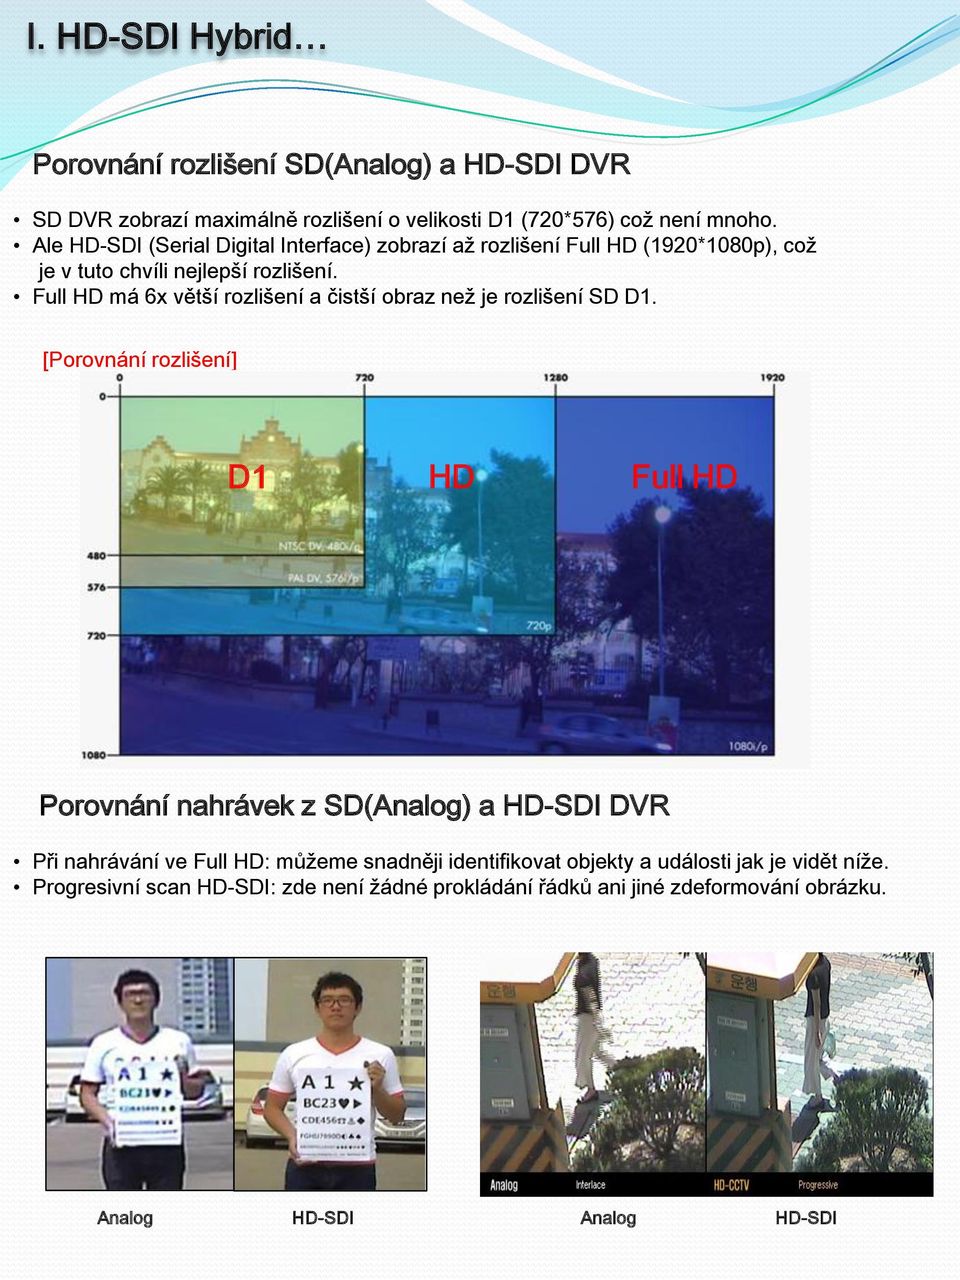 Full HD má 6x větší rozlišení a čistší obraz než je rozlišení SD D1.